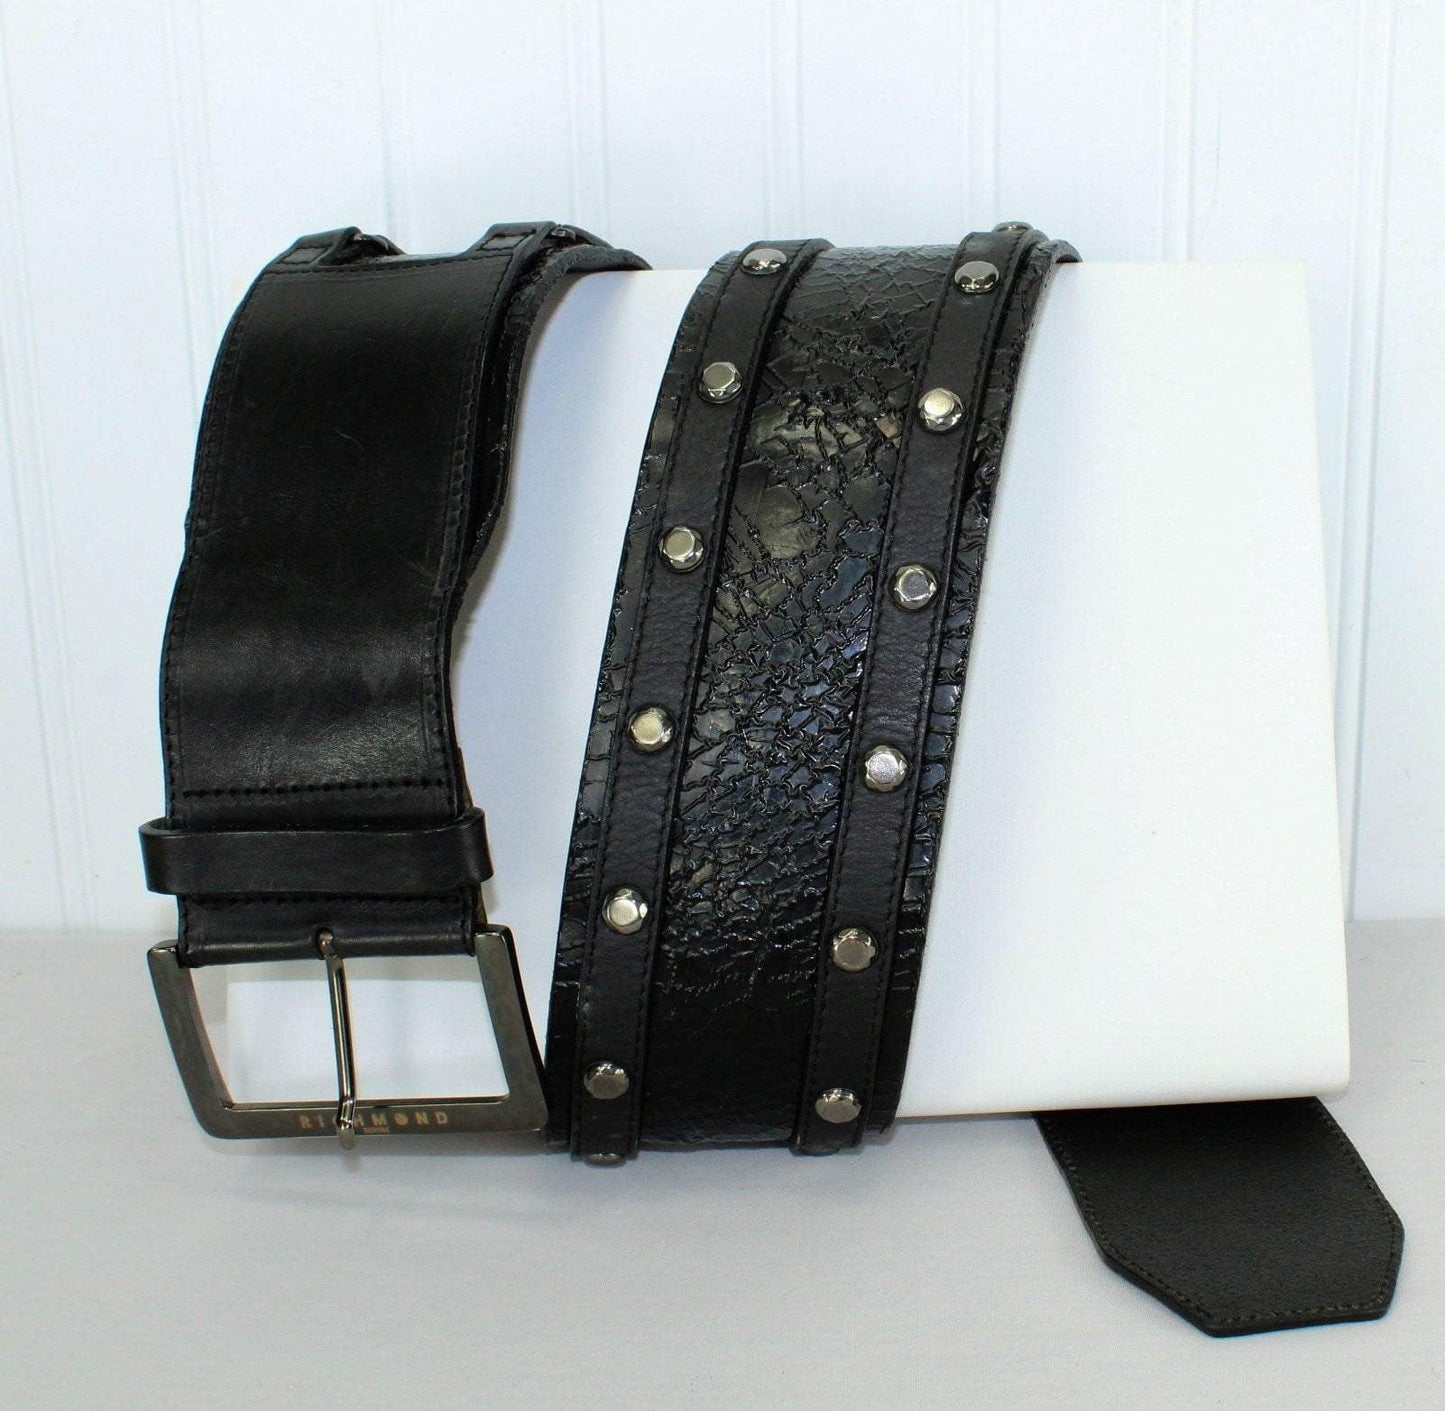 Richmond Denim Belt - Black Layered Bands Leather With Gunmetal Studs brutalist industrialist